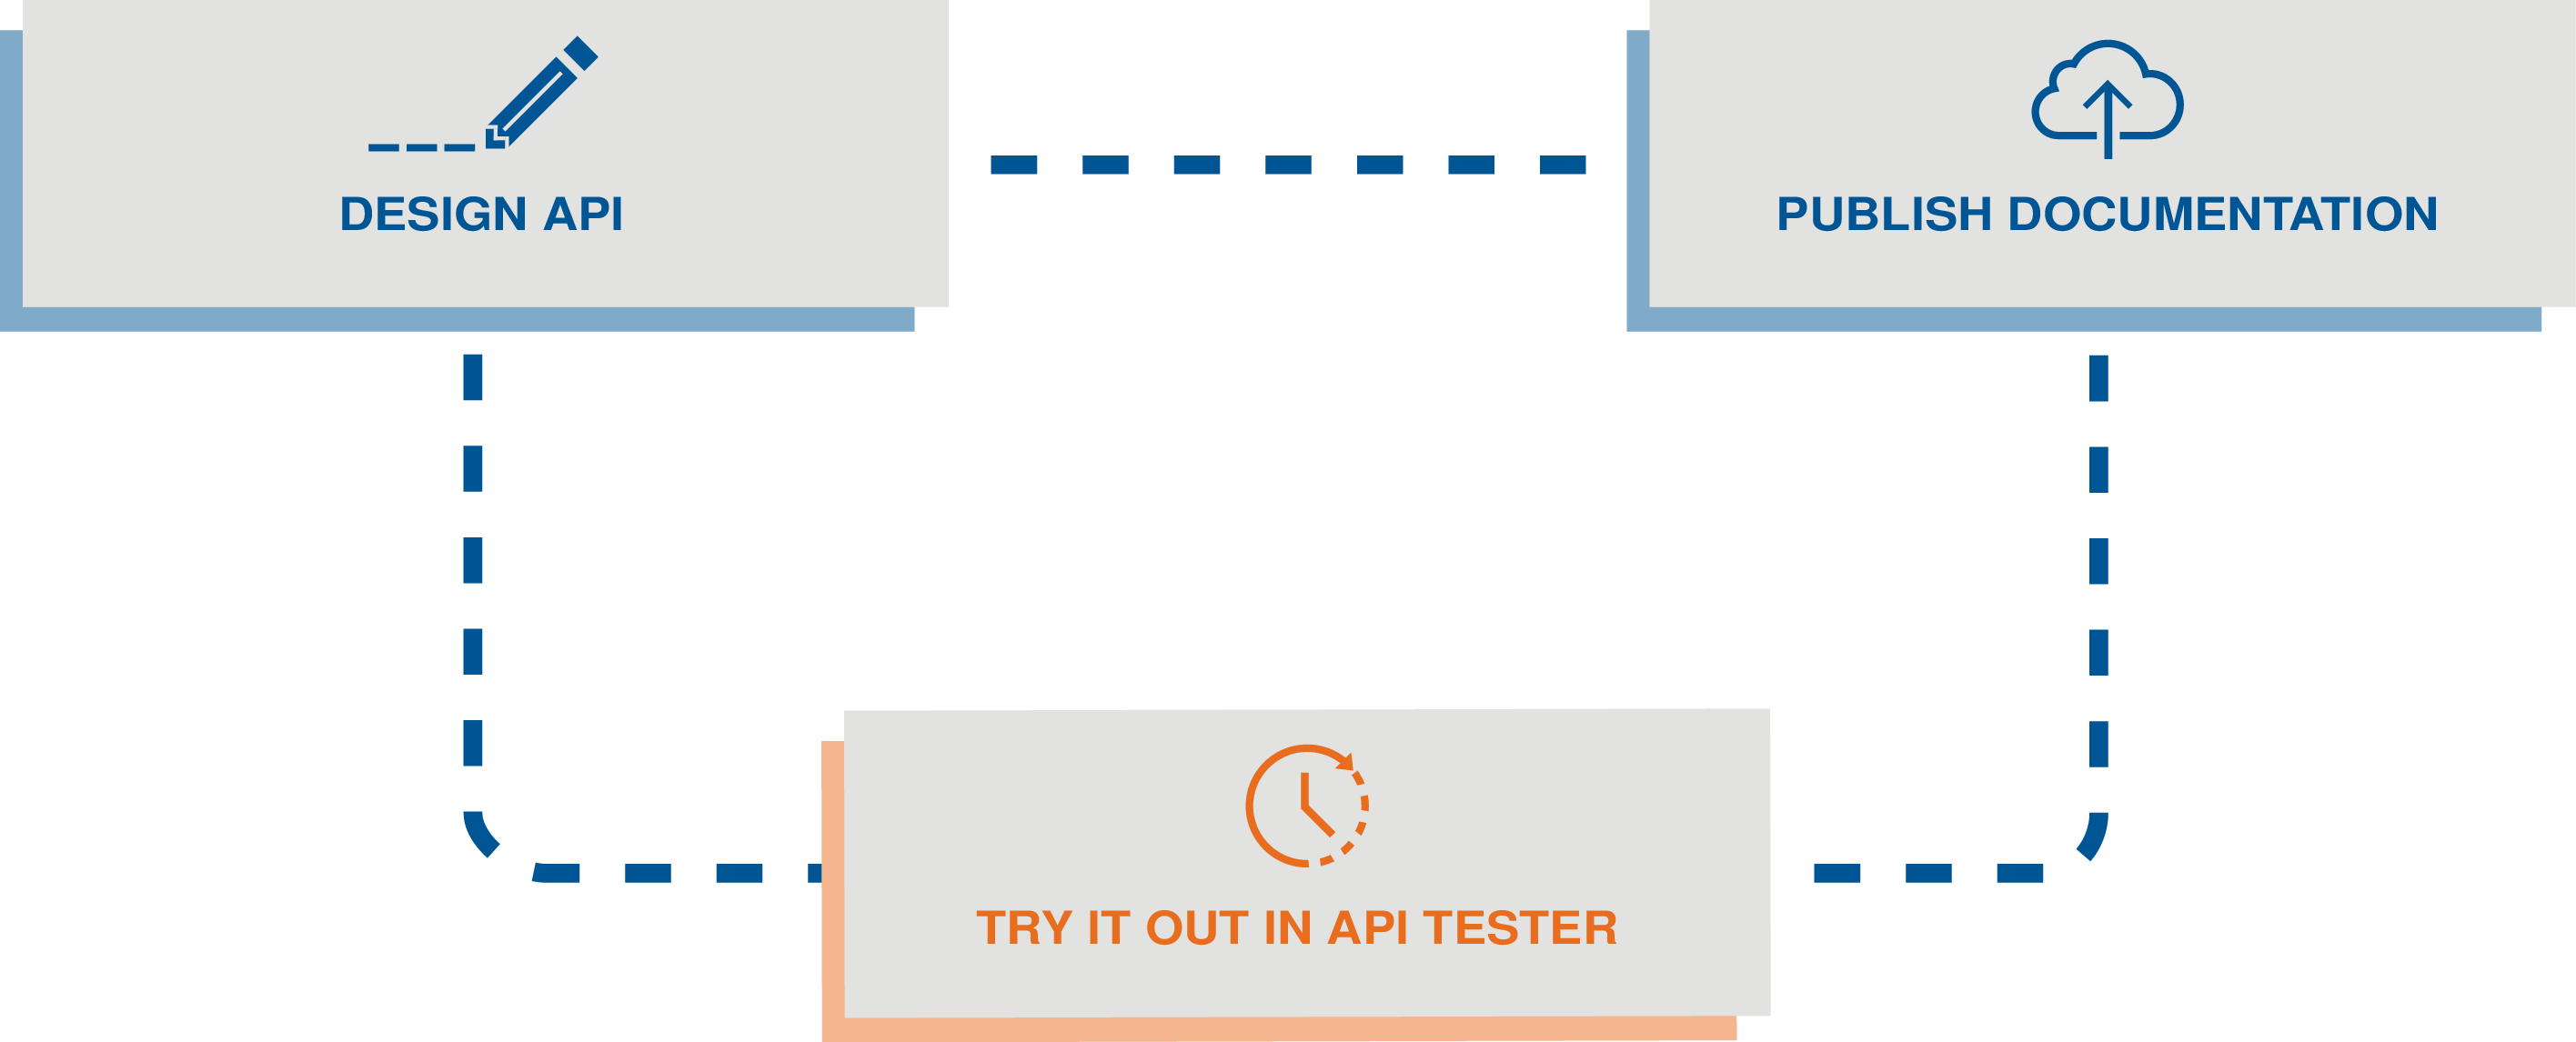 最初にAPIをデザインし、次にTalend Cloud API Testerでそれを試して、最後にAPIドキュメンテーションを公開します。